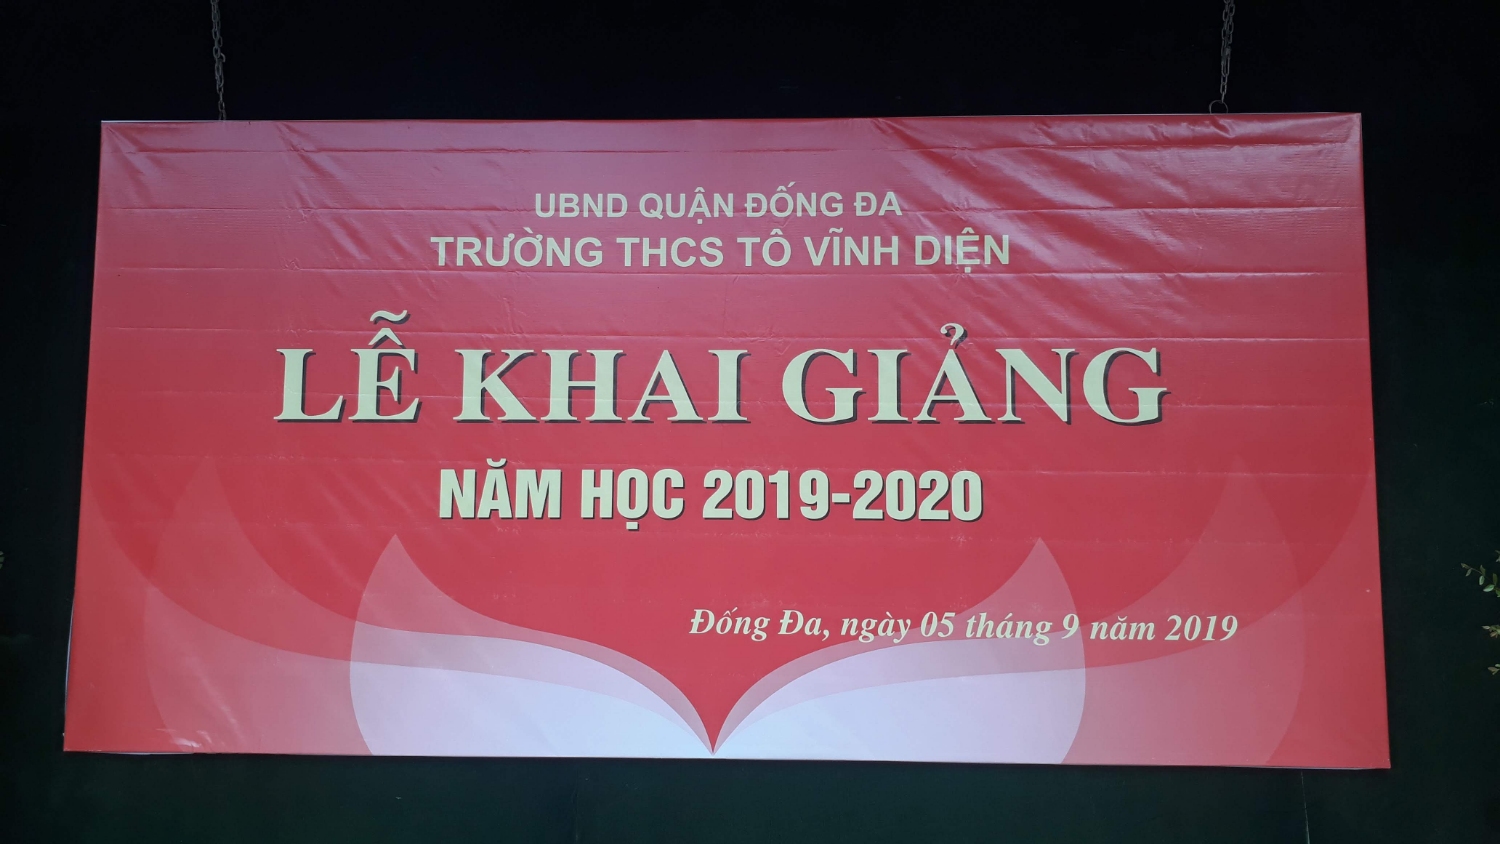 Trường THCS Tô Vĩnh Diện long trọng tổ chức lễ khai giảng năm học 2019-2020